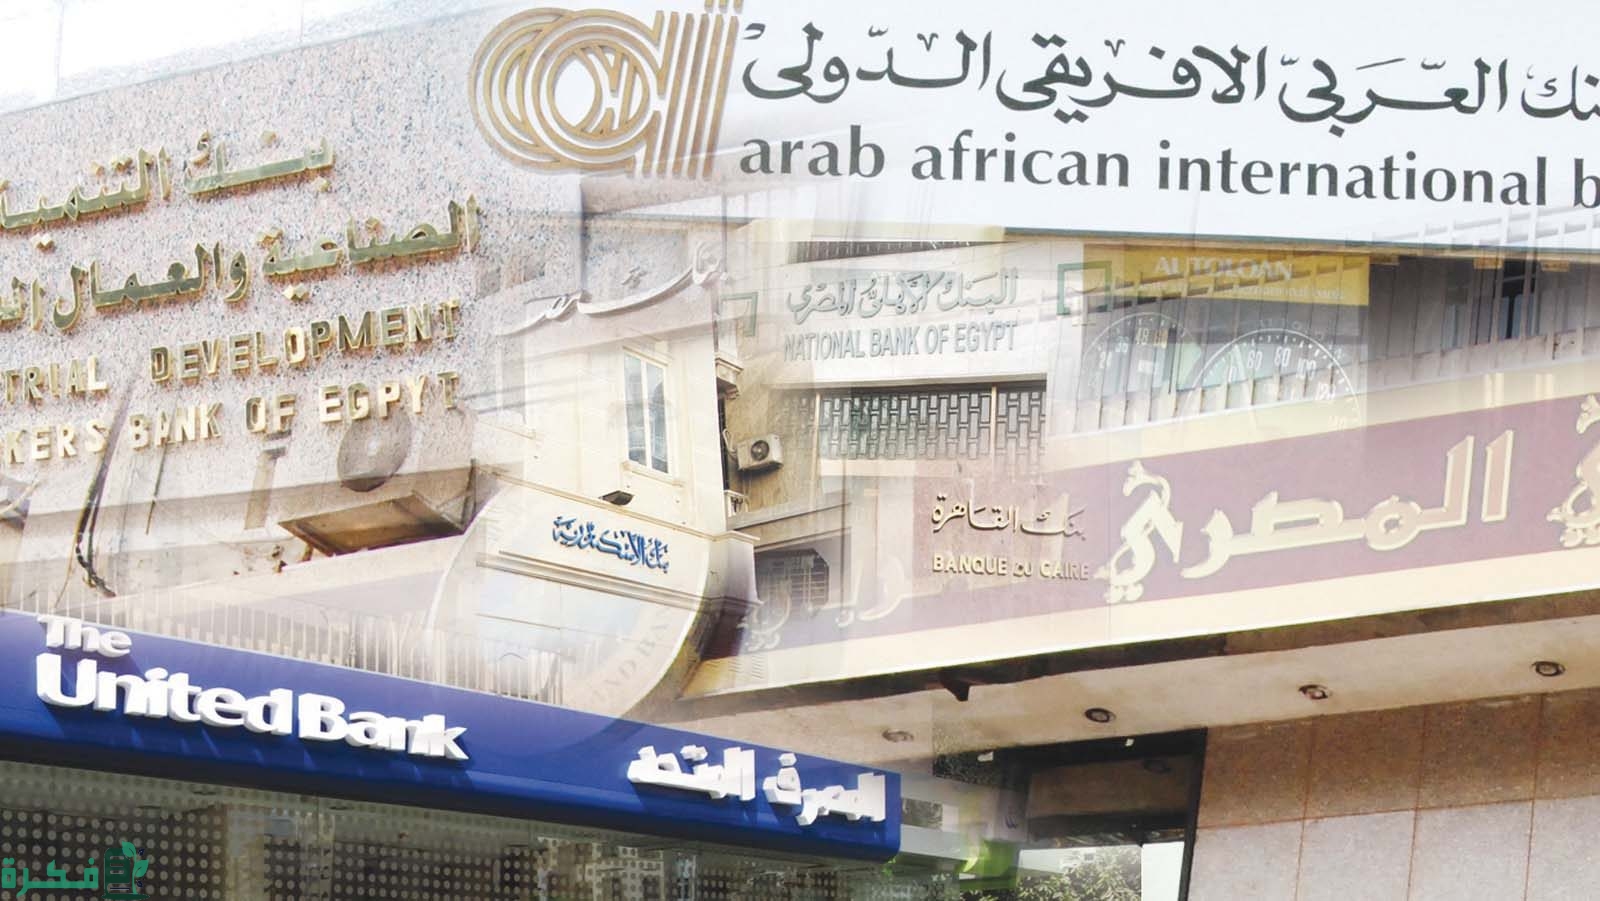  شهادات البنك العربي الأفريقي الدولي